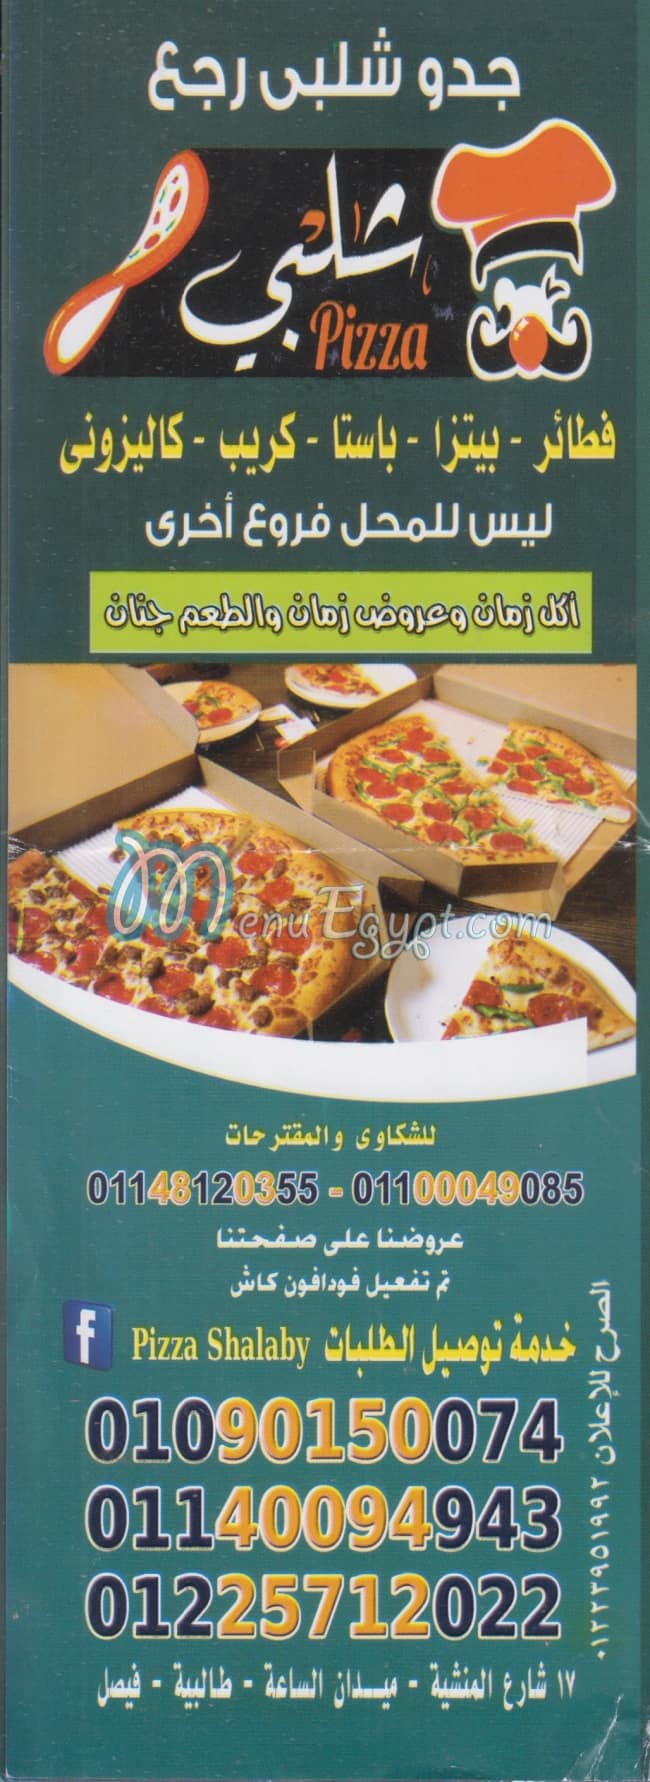 Gedo Shalaby menu